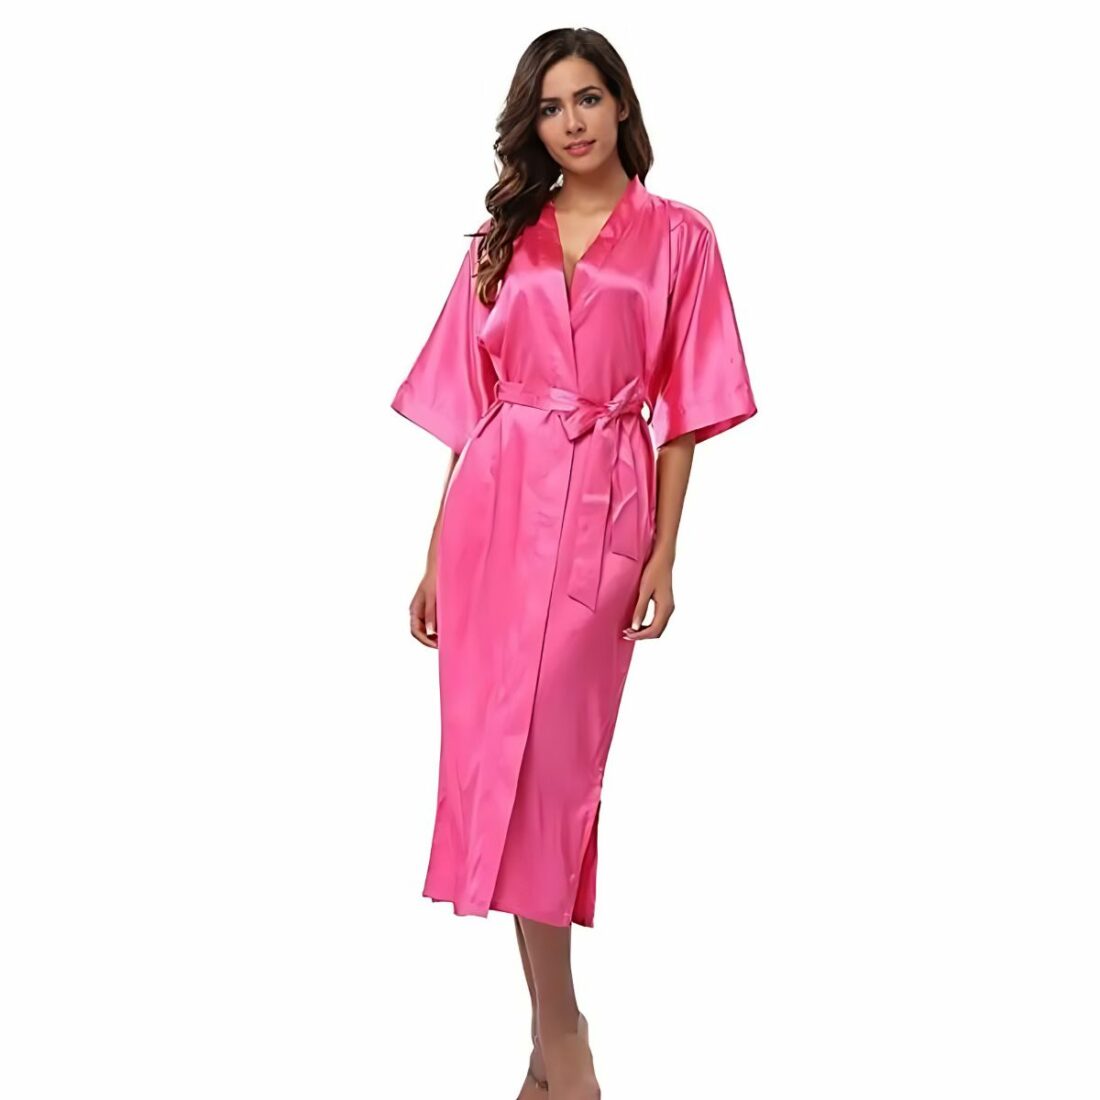 Robe de chambre longue unie en satin pour femme IMG 15 02 robe chambre longue unie femme portee rose